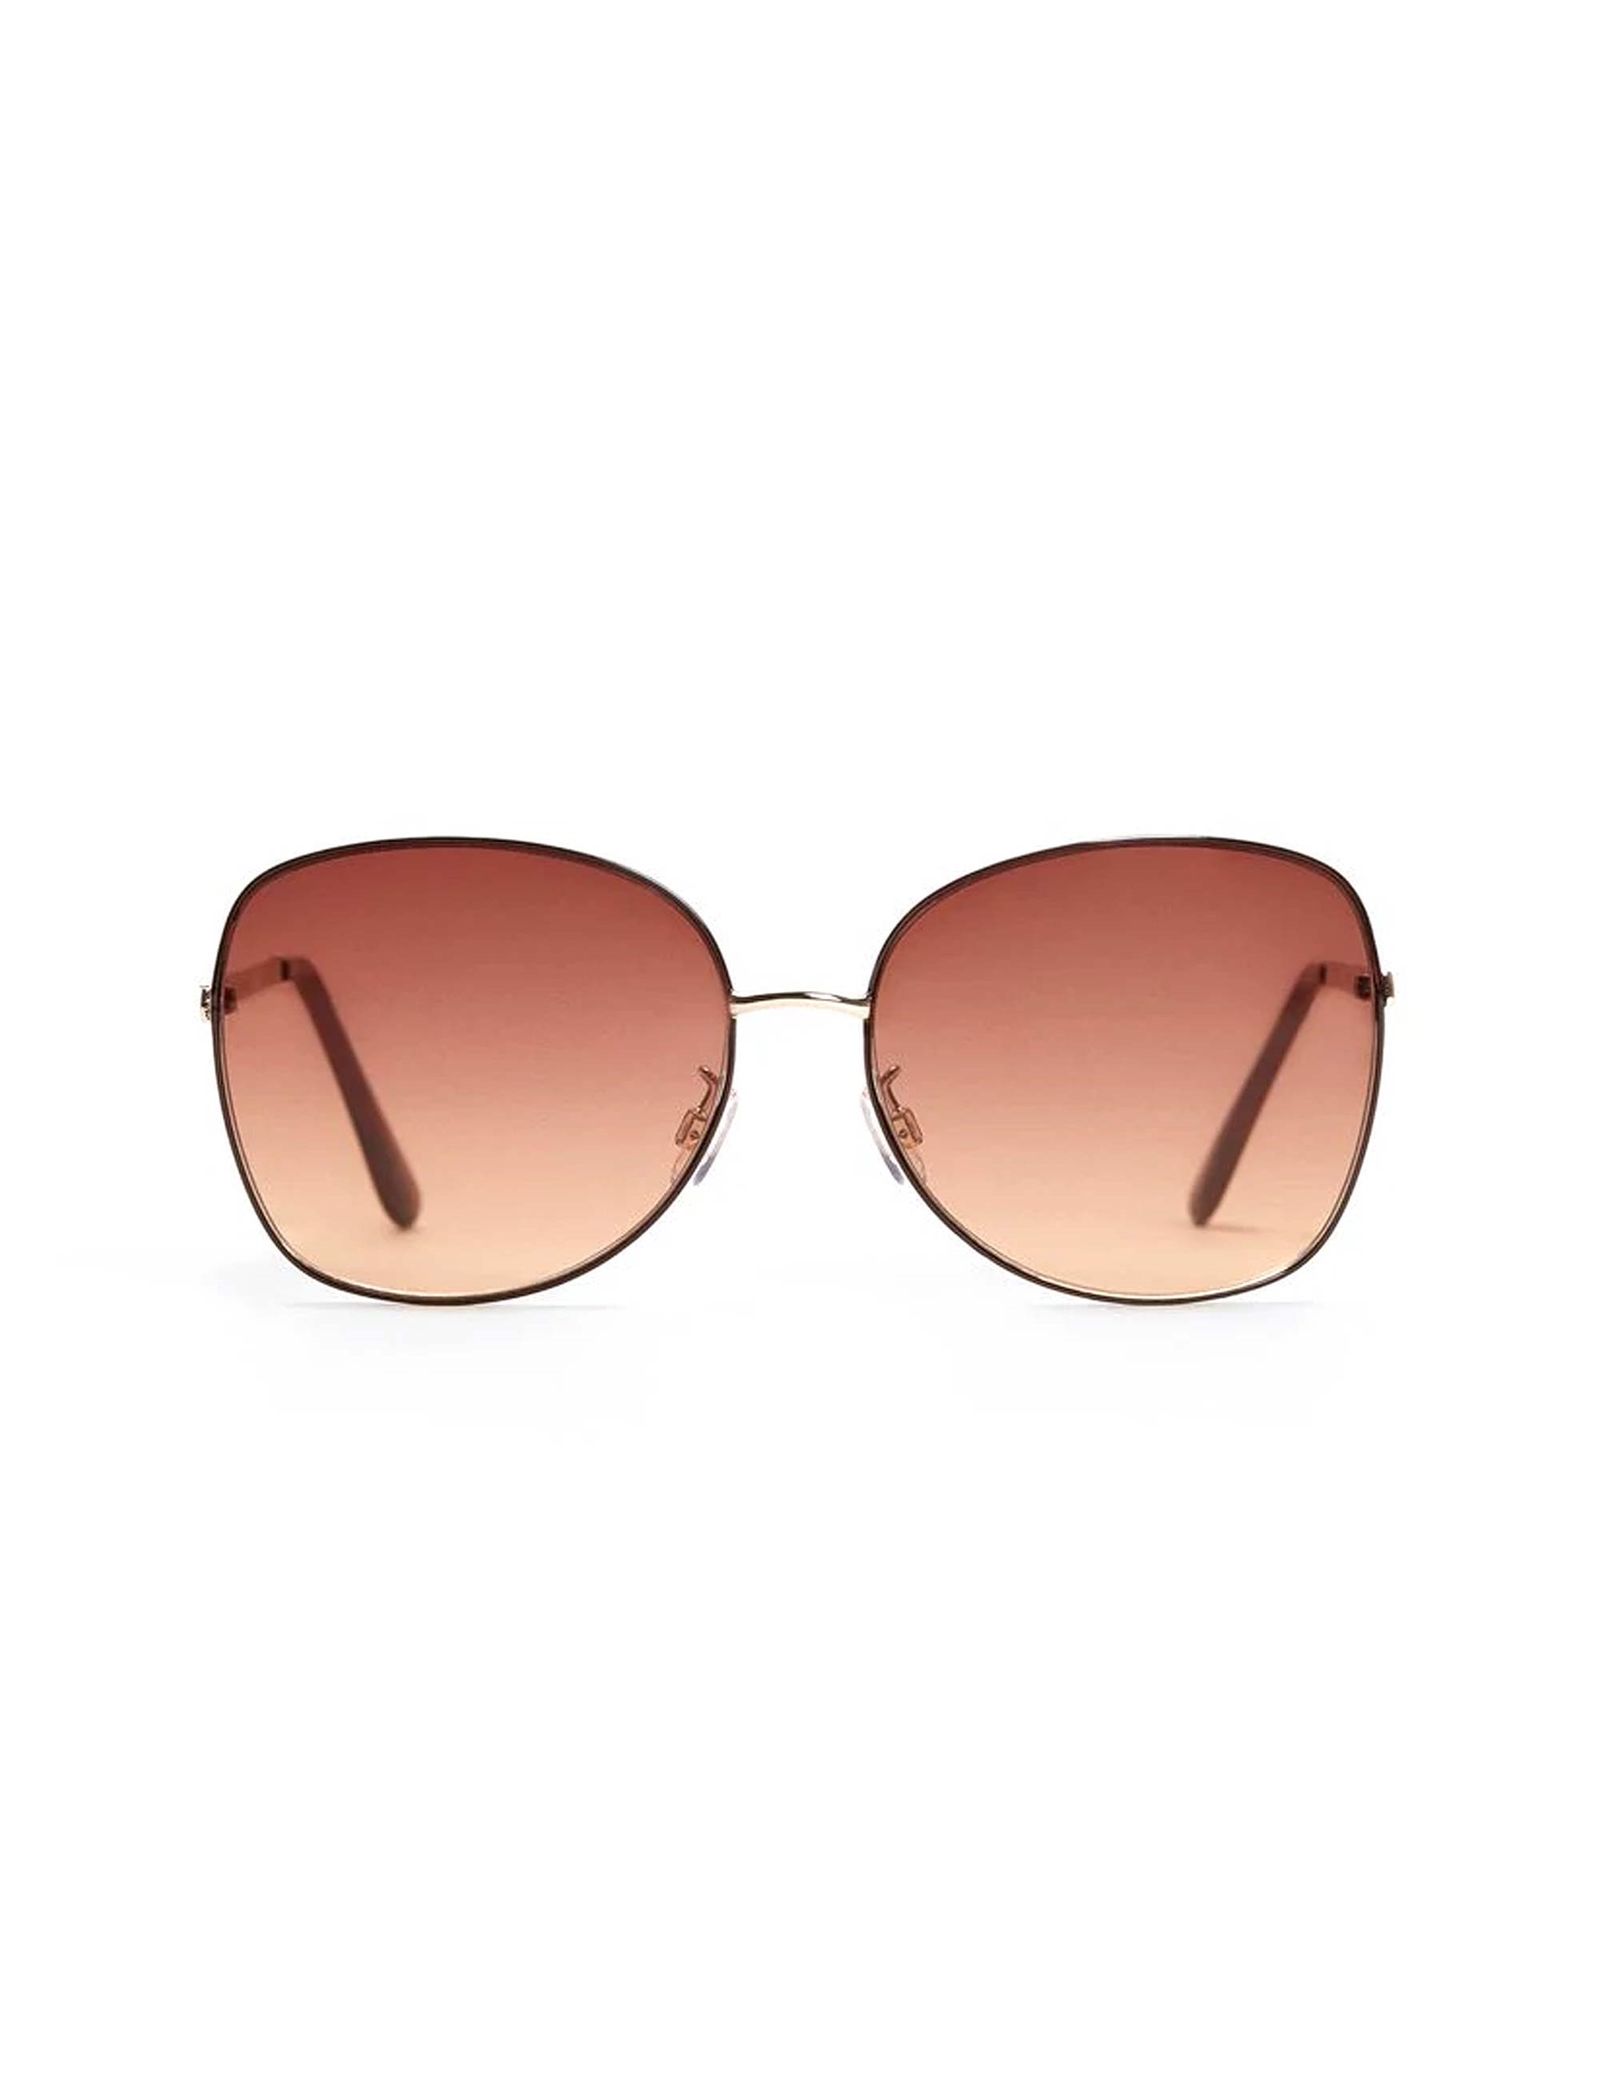 عینک آفتابی خلبانی فلزی زنانه - مانگو - طلايي - 2